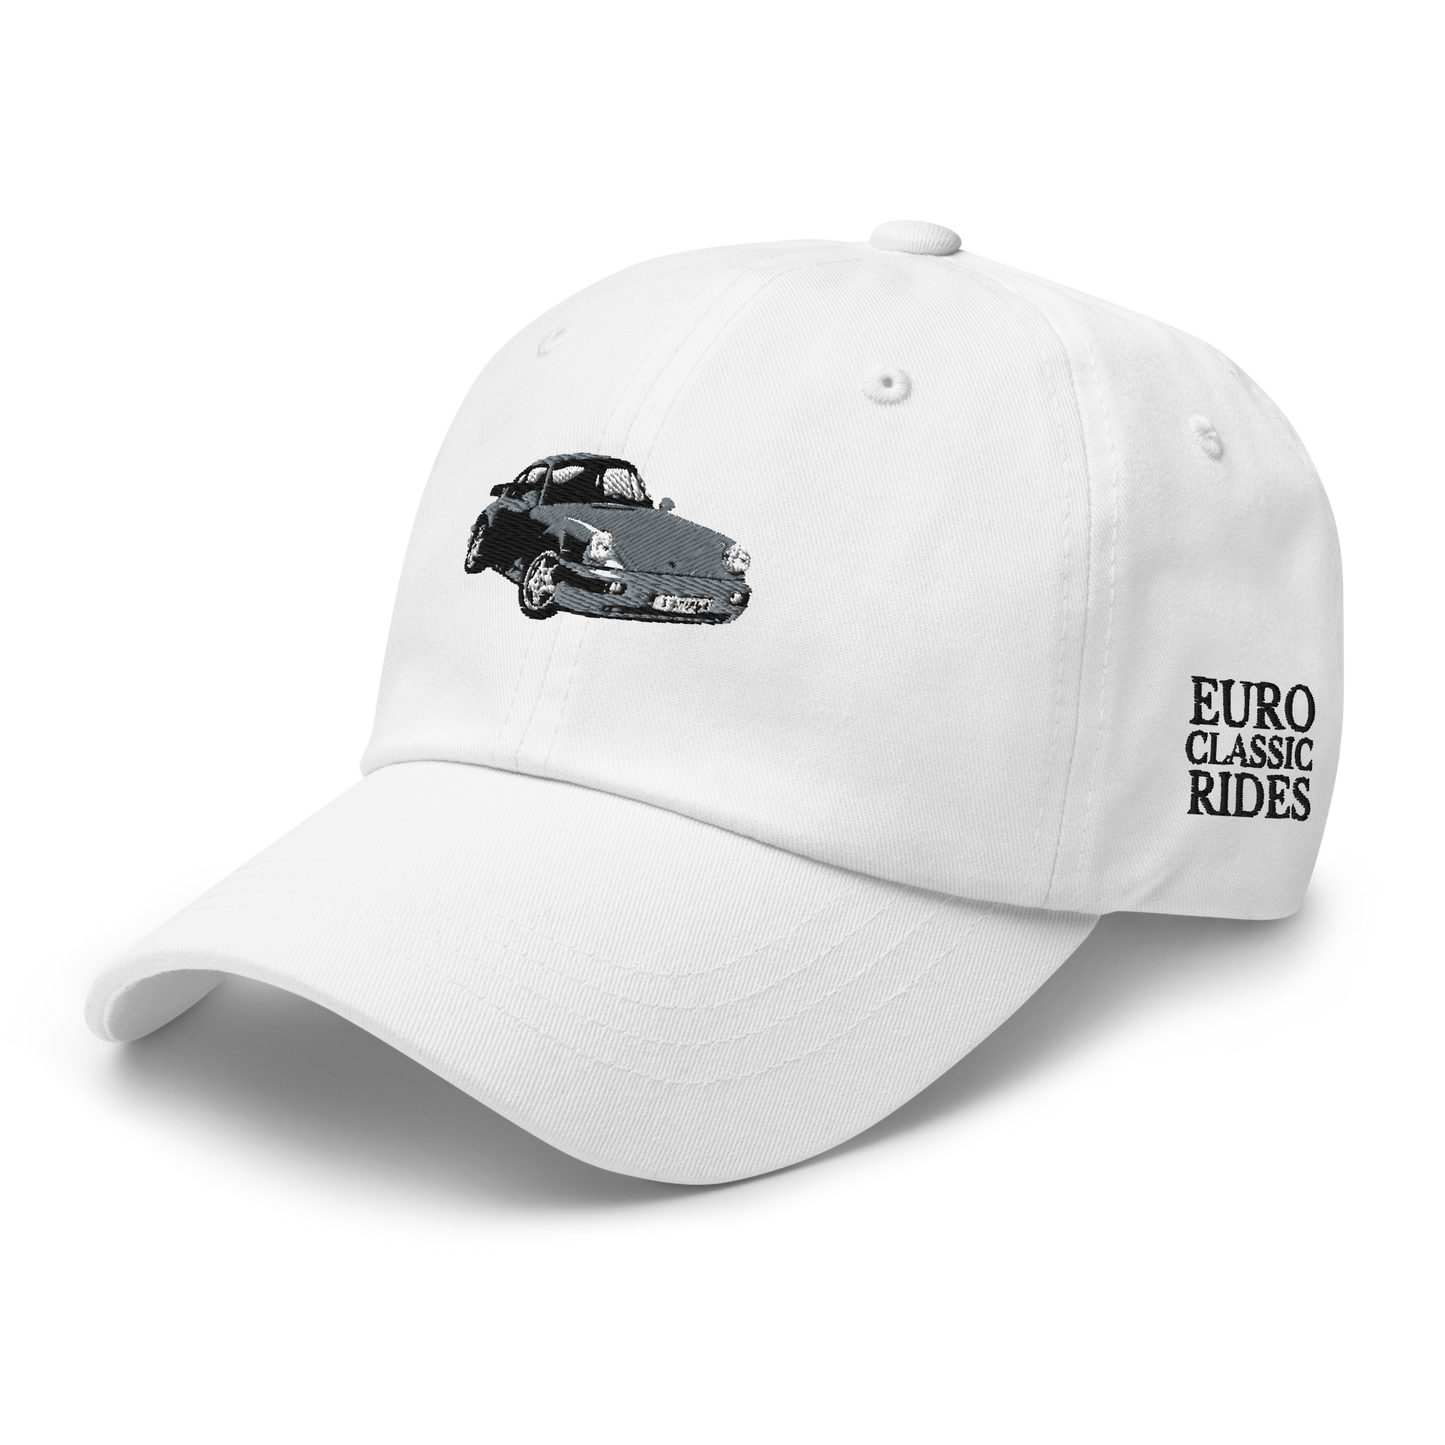 Grey Porsche Dad hat - DUMBFRESHCO